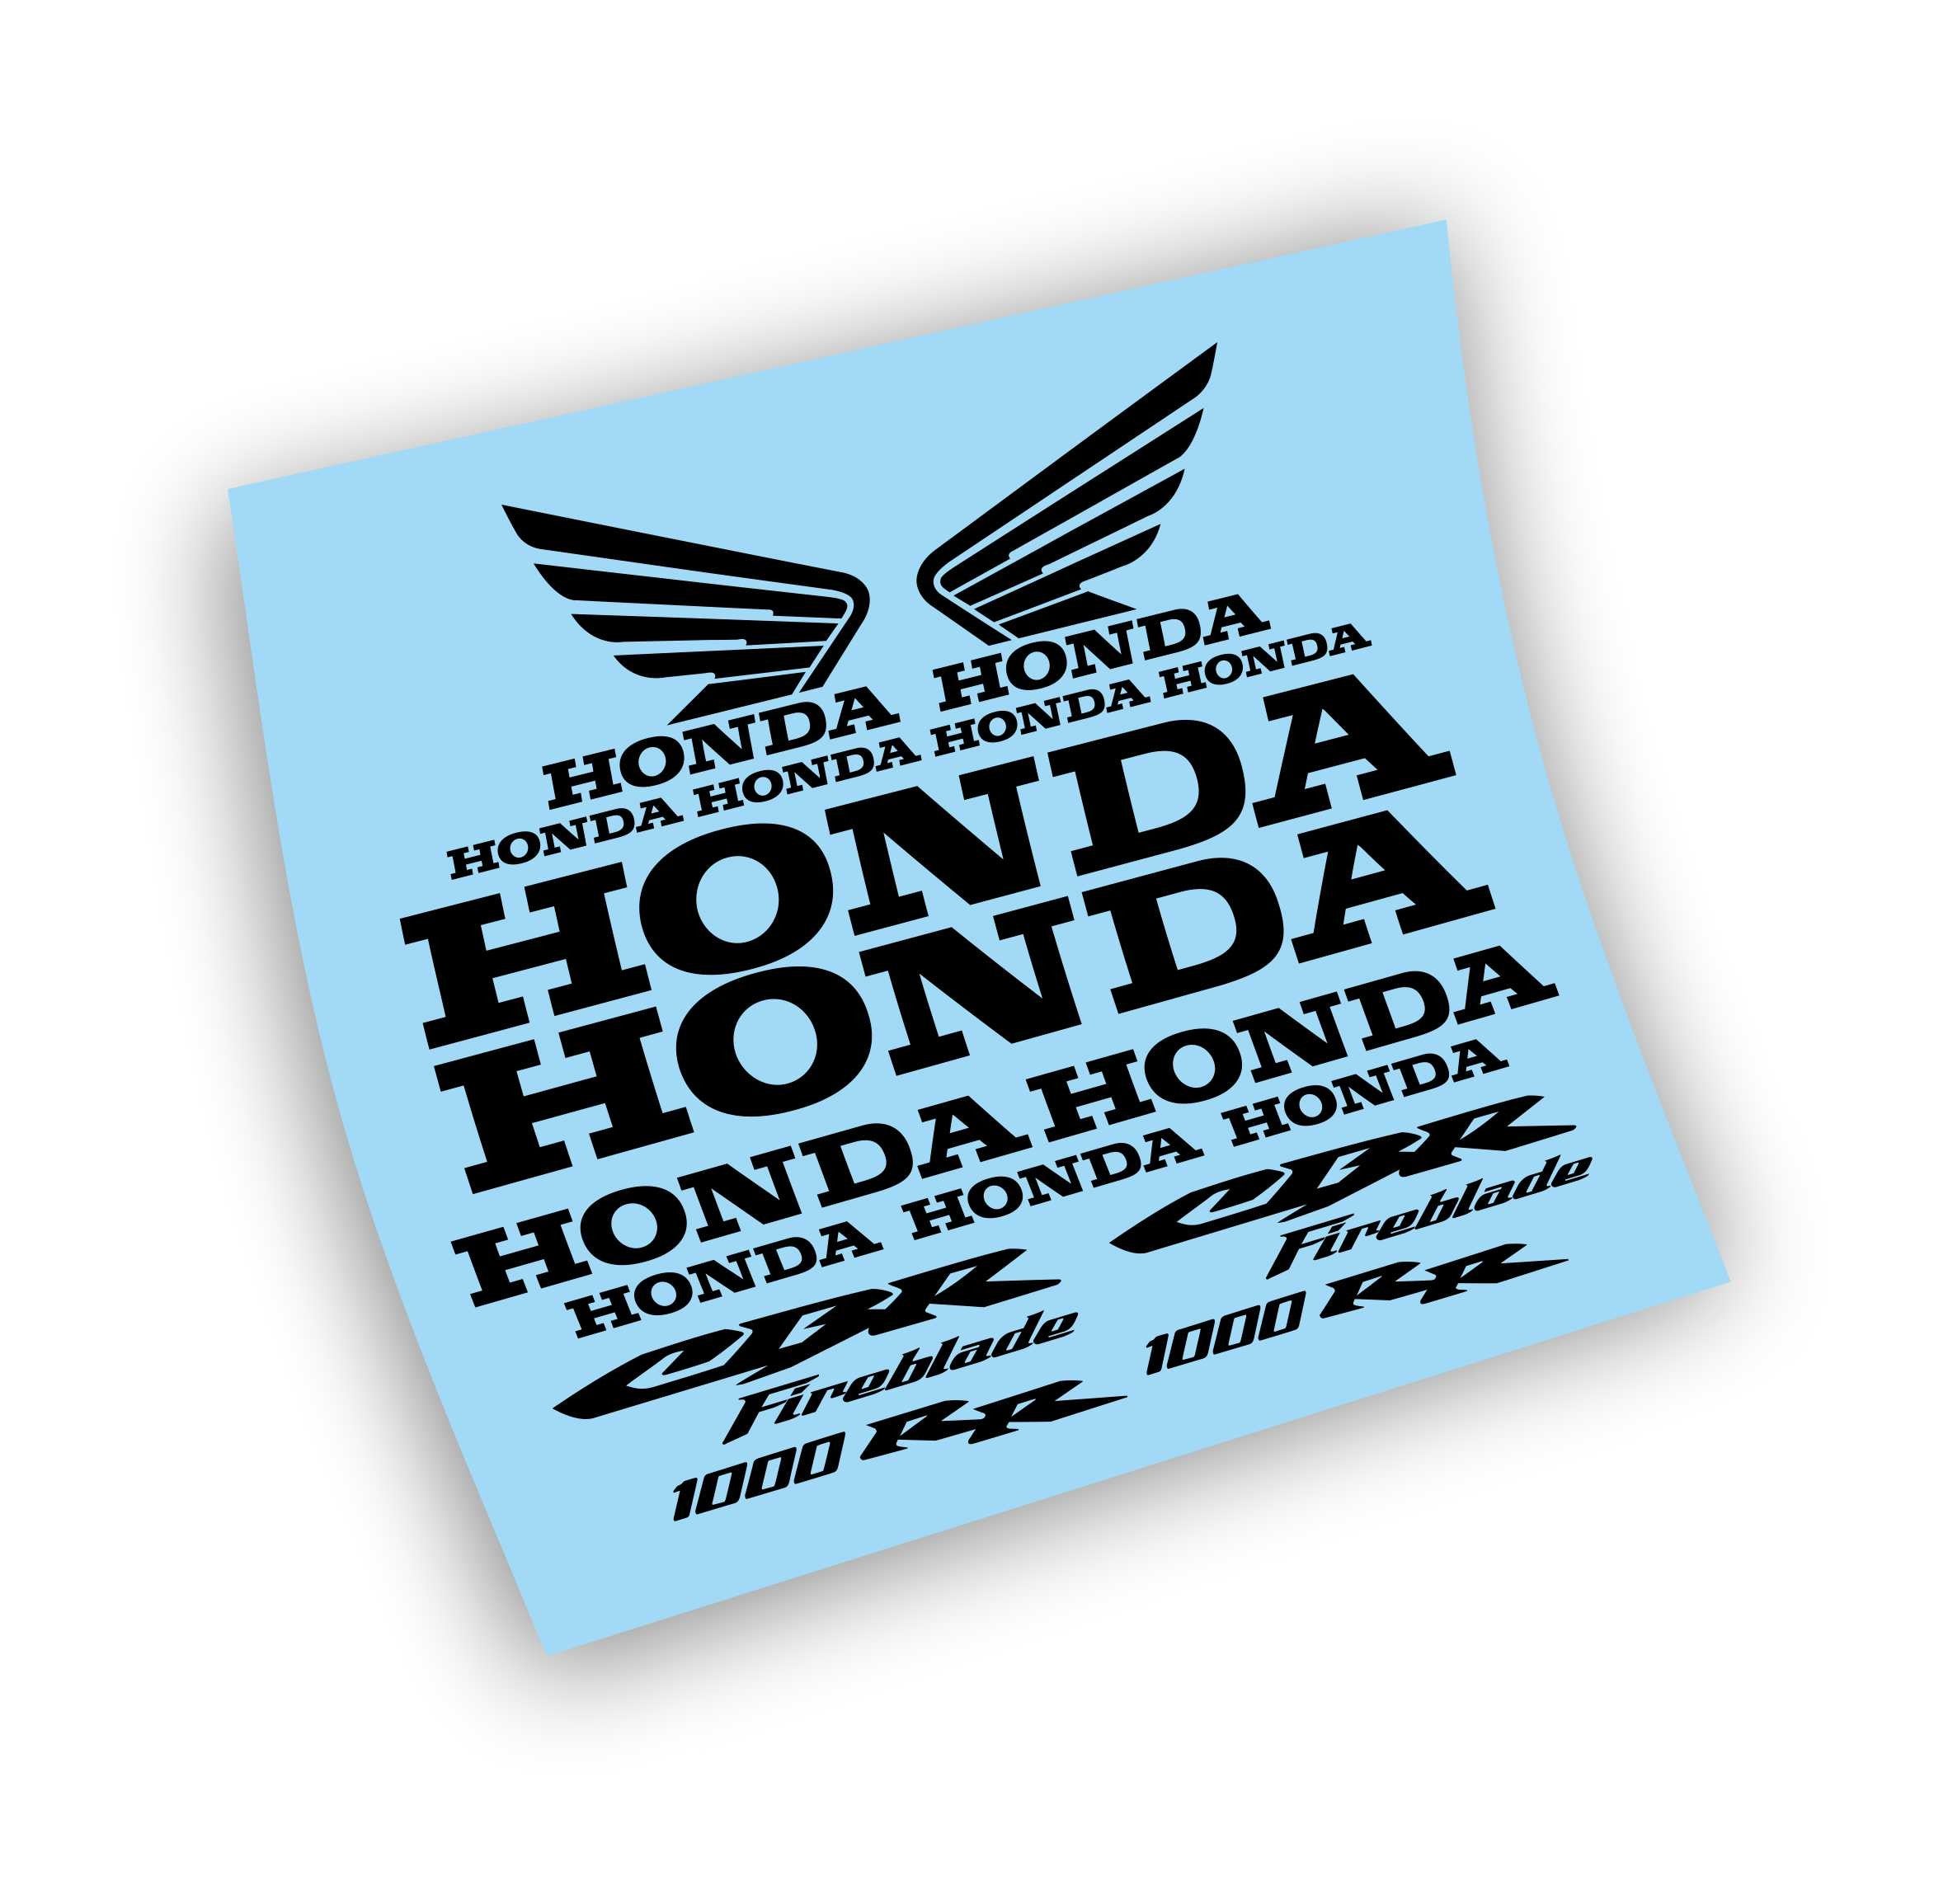 Kit adesivi Honda CBR 1000 Fireblade compatibili | Base Vinile Trasparente  Facile Applicazione Stampa UV BIANCO-BIANCO | VARI COLORI DISPONIBILI